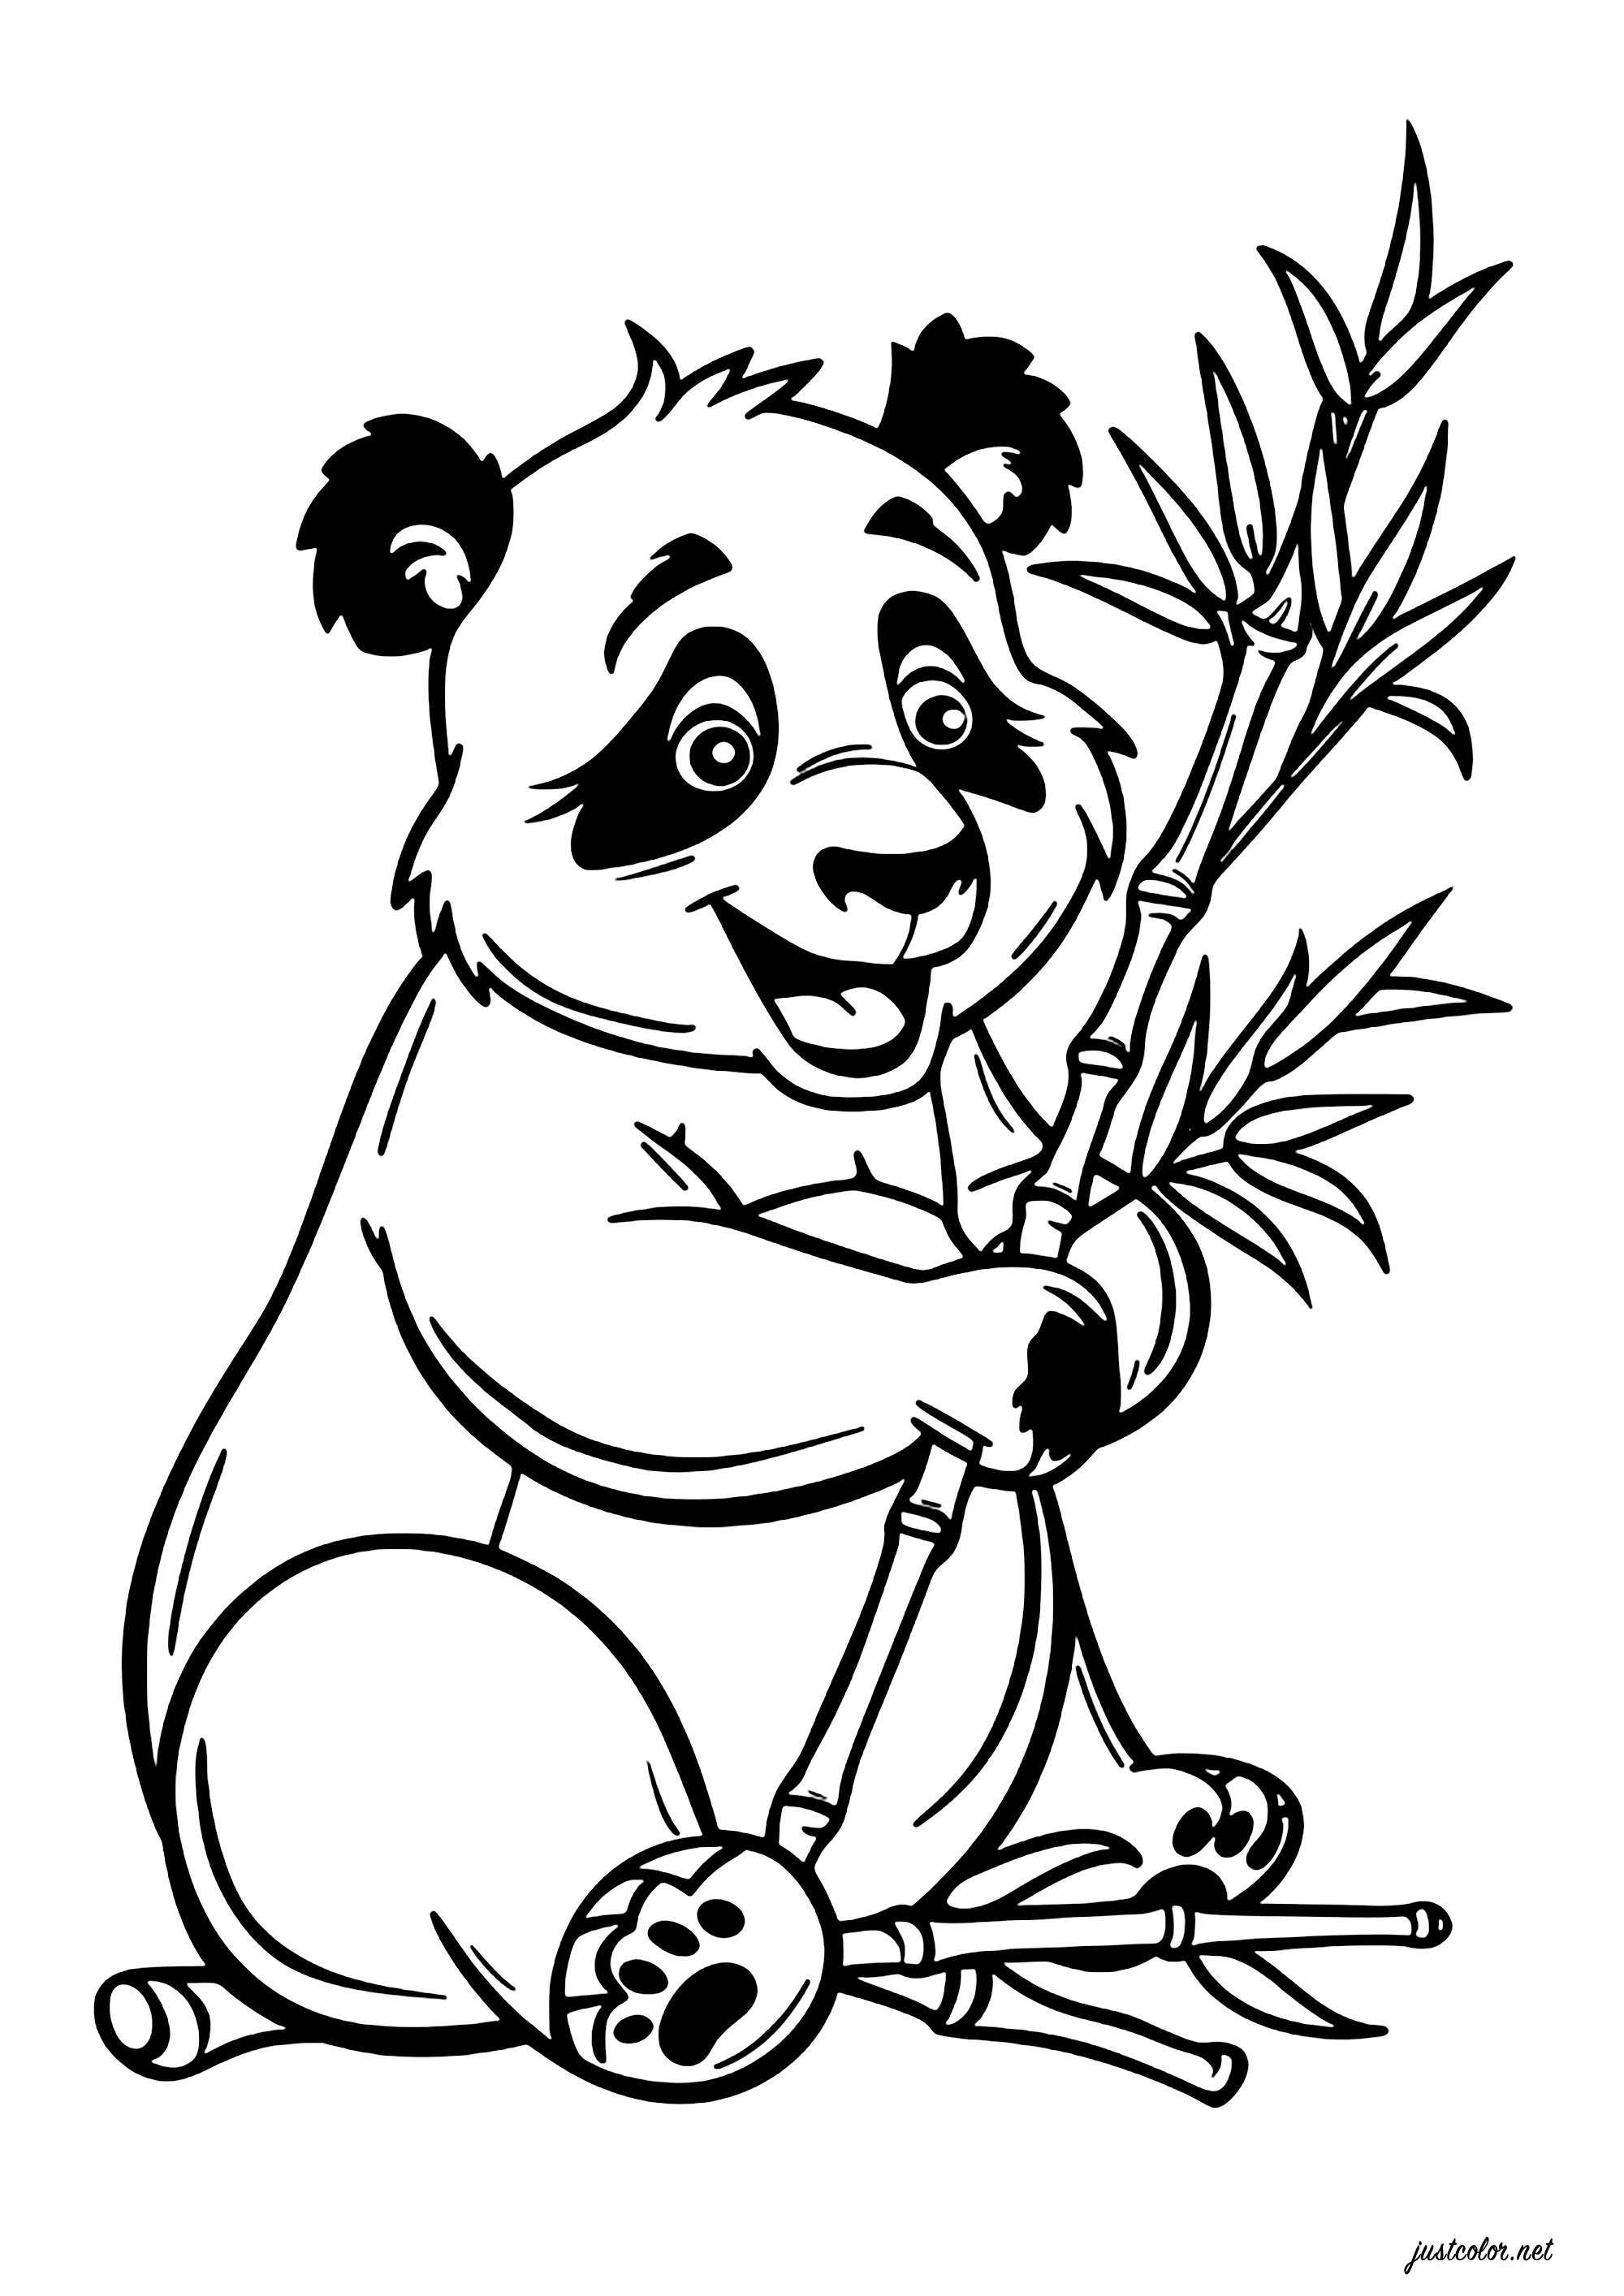 Joven panda comiendo bambú. Para consumir unos 20 kg de alimento al día y optimizar la absorción de nutrientes, el panda selecciona sólo las partes blandas del bambú, que mastica meticulosamente durante largos periodos.Esto supone una considerable inversión de tiempo en su alimentación diaria.